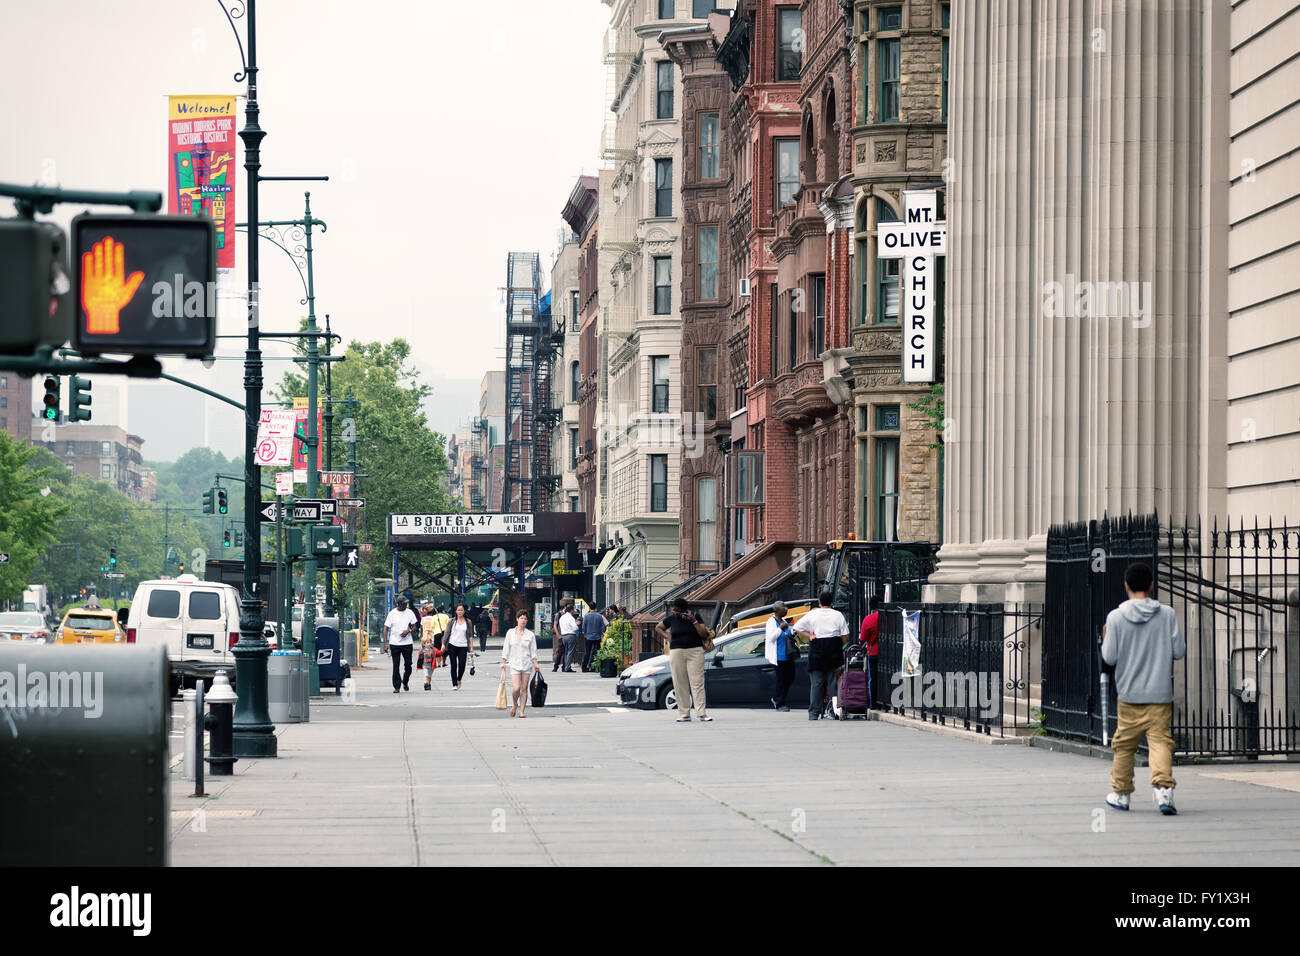 NEW YORK, USA - 16 juin 2015 : Malcolm X Boulevard, dans le quartier de Harlem. Harlem est un grand quartier au sein de la section du nord Banque D'Images